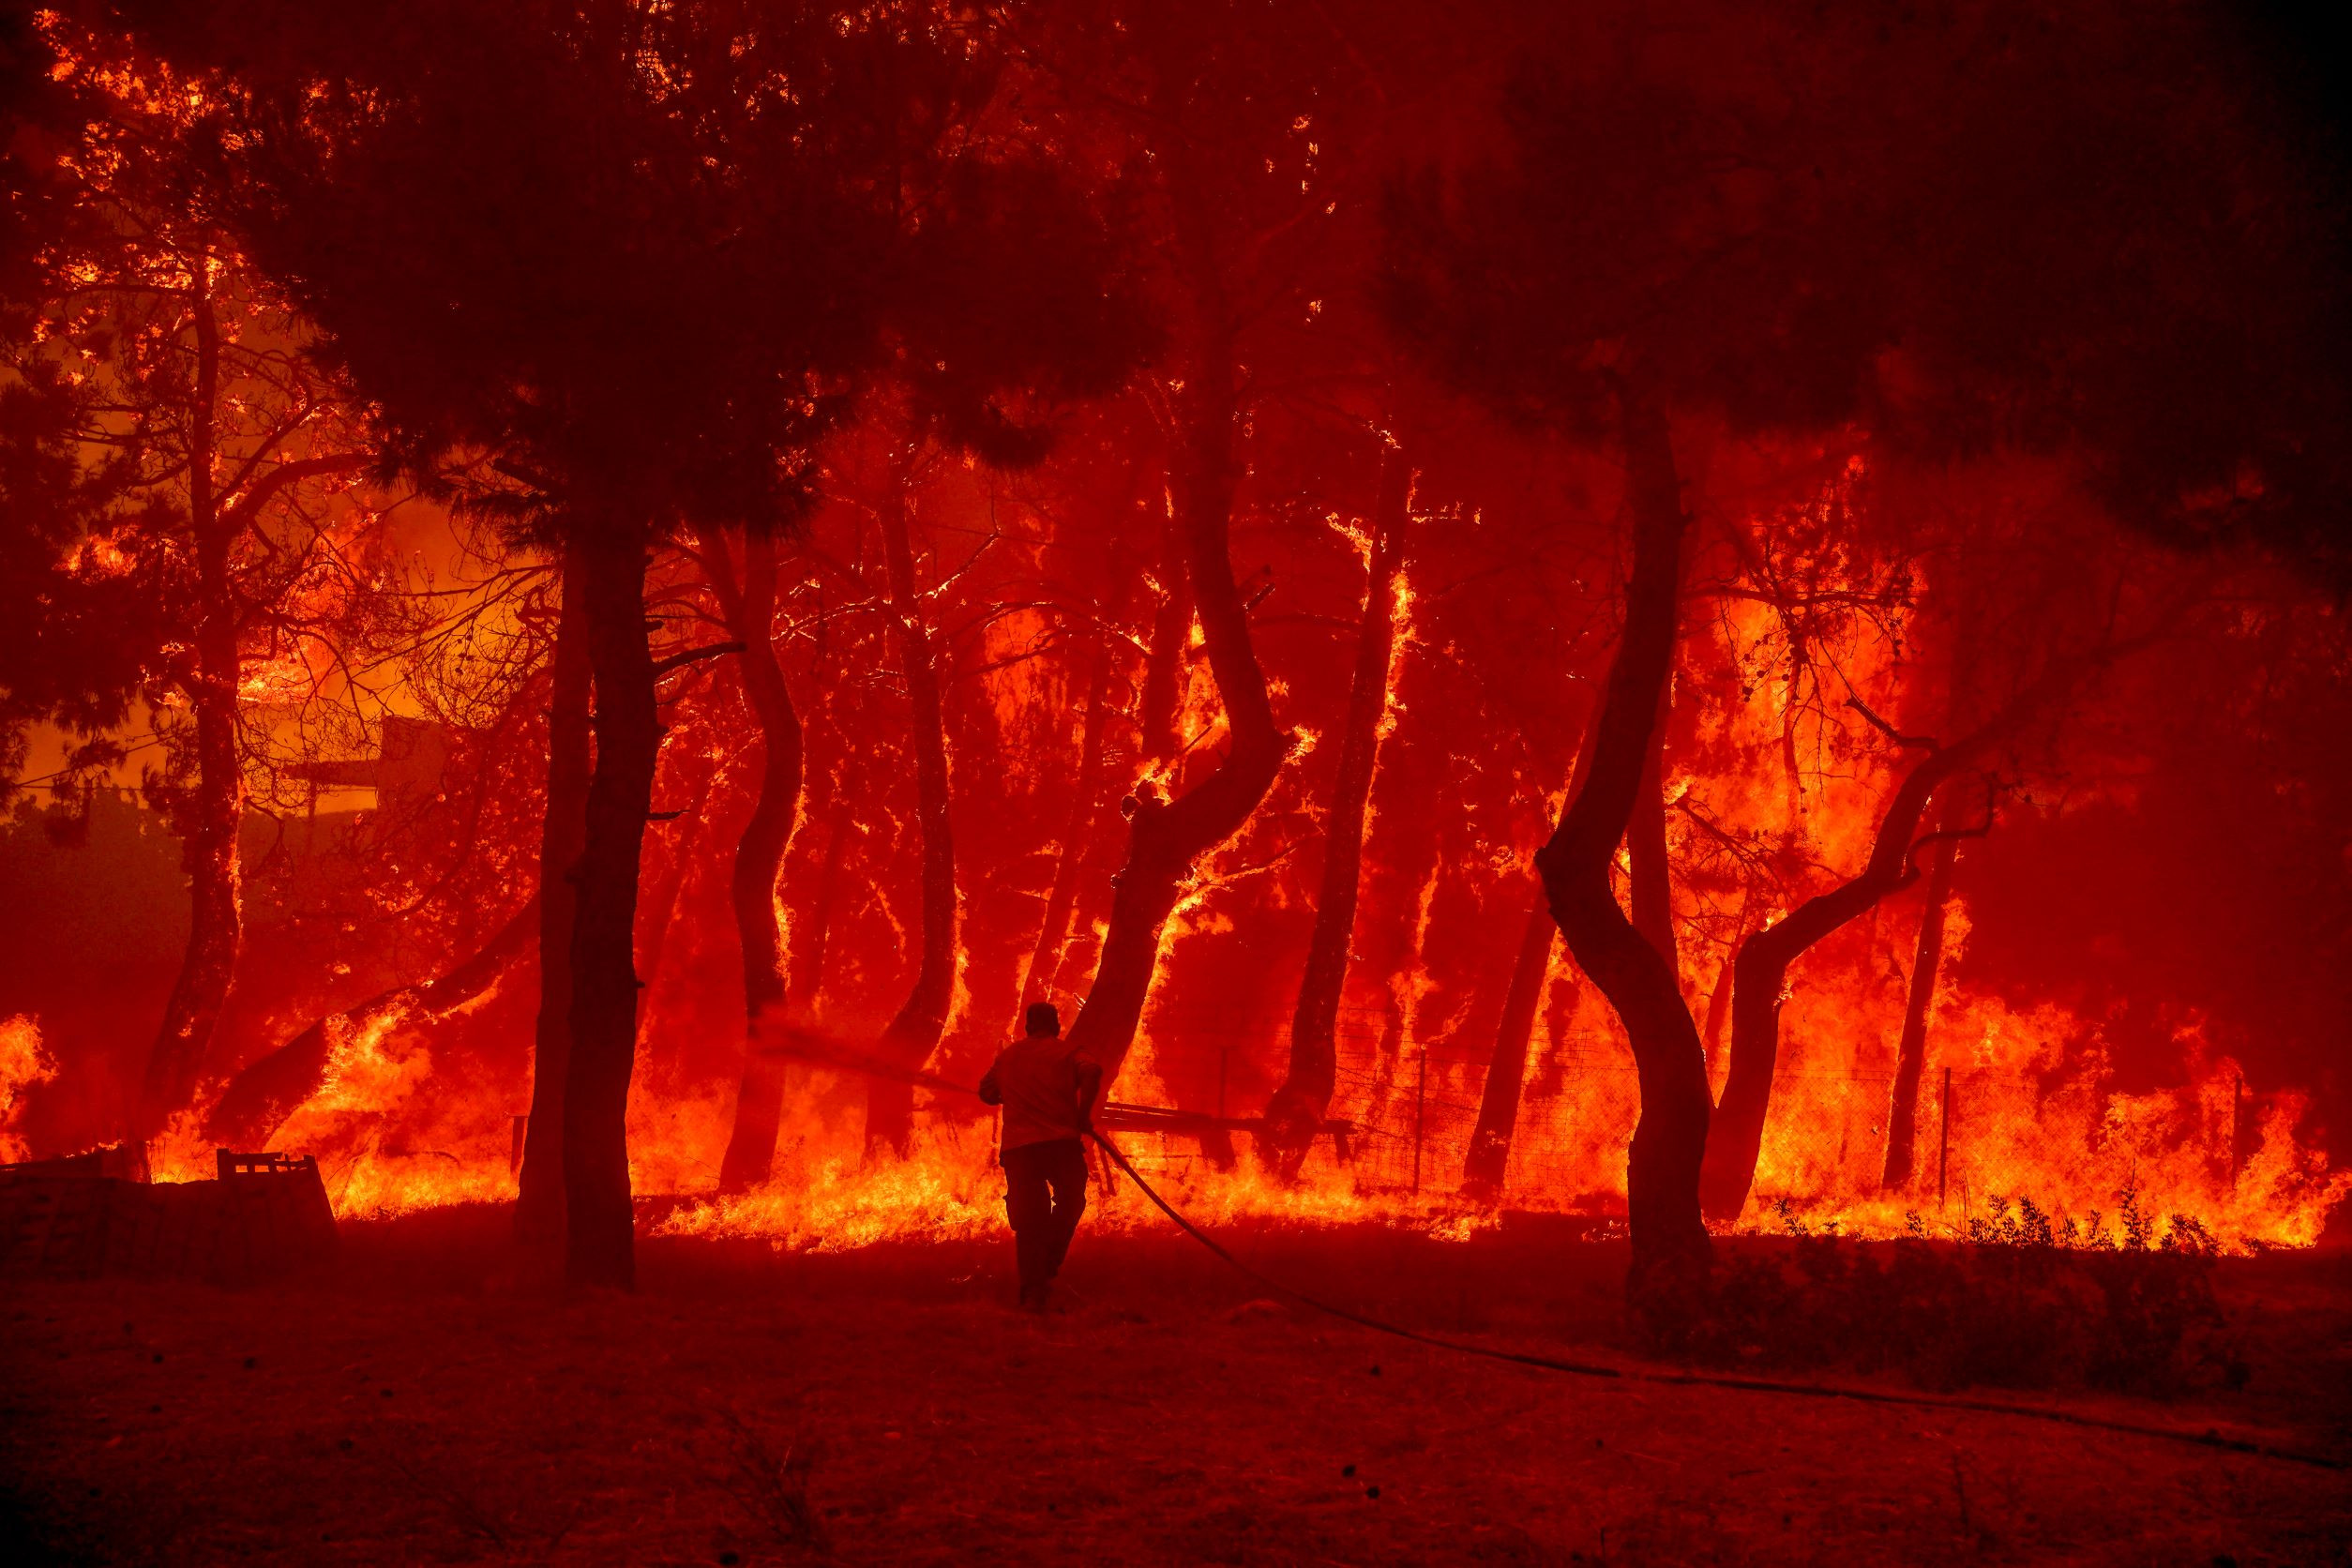 Τραγική ειρωνεία: Μαίνονται οι δασικές πυρκαγιές και η κυβέρνηση Μητσοτάκη αμβλύνει την προστασία περιοχών Νatura